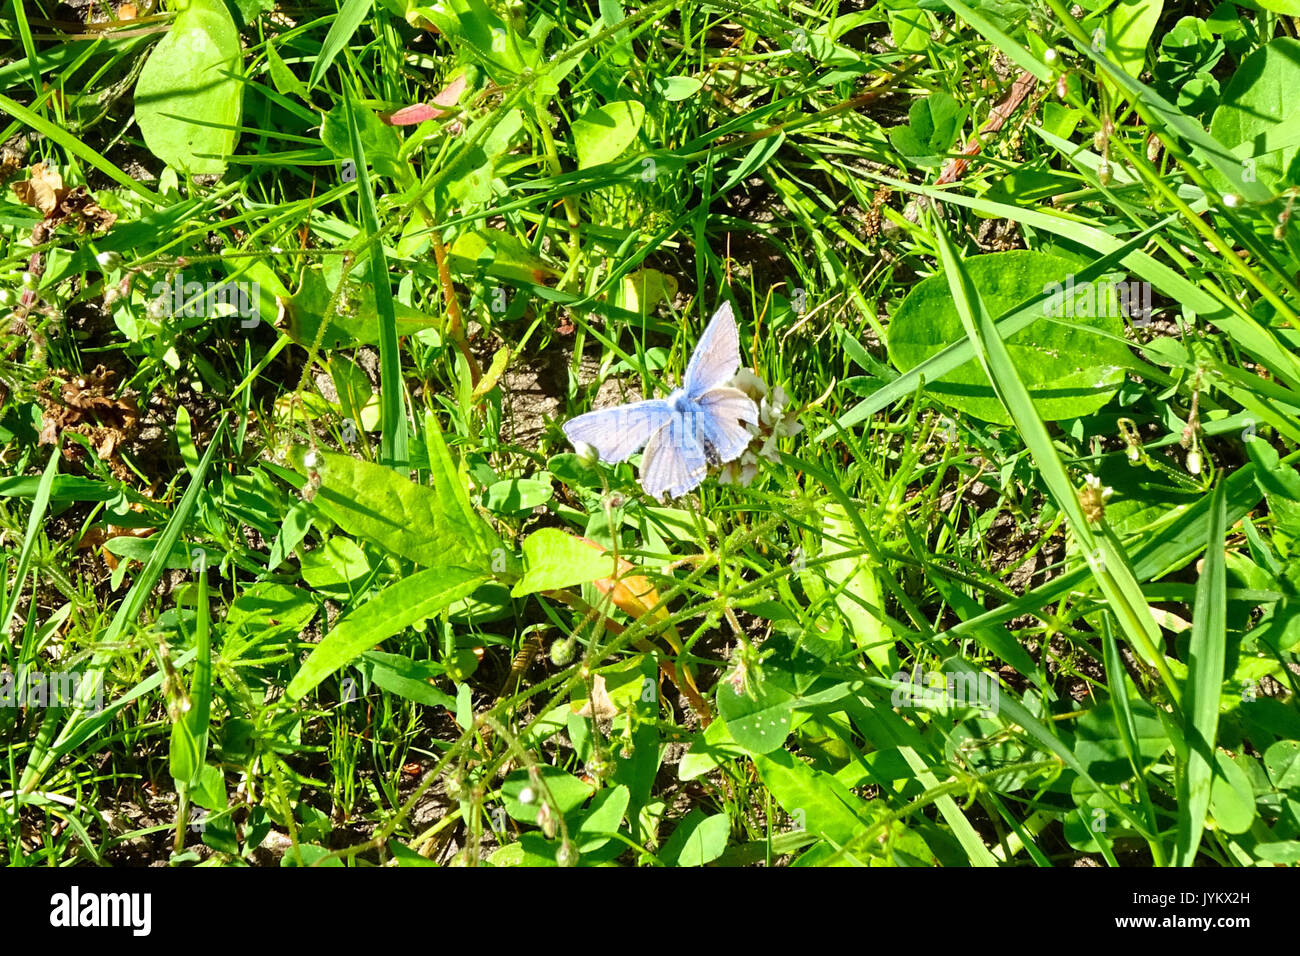 20170601 Nationaal Park de Drentsche Aa icarusblauwtje Foto de stock